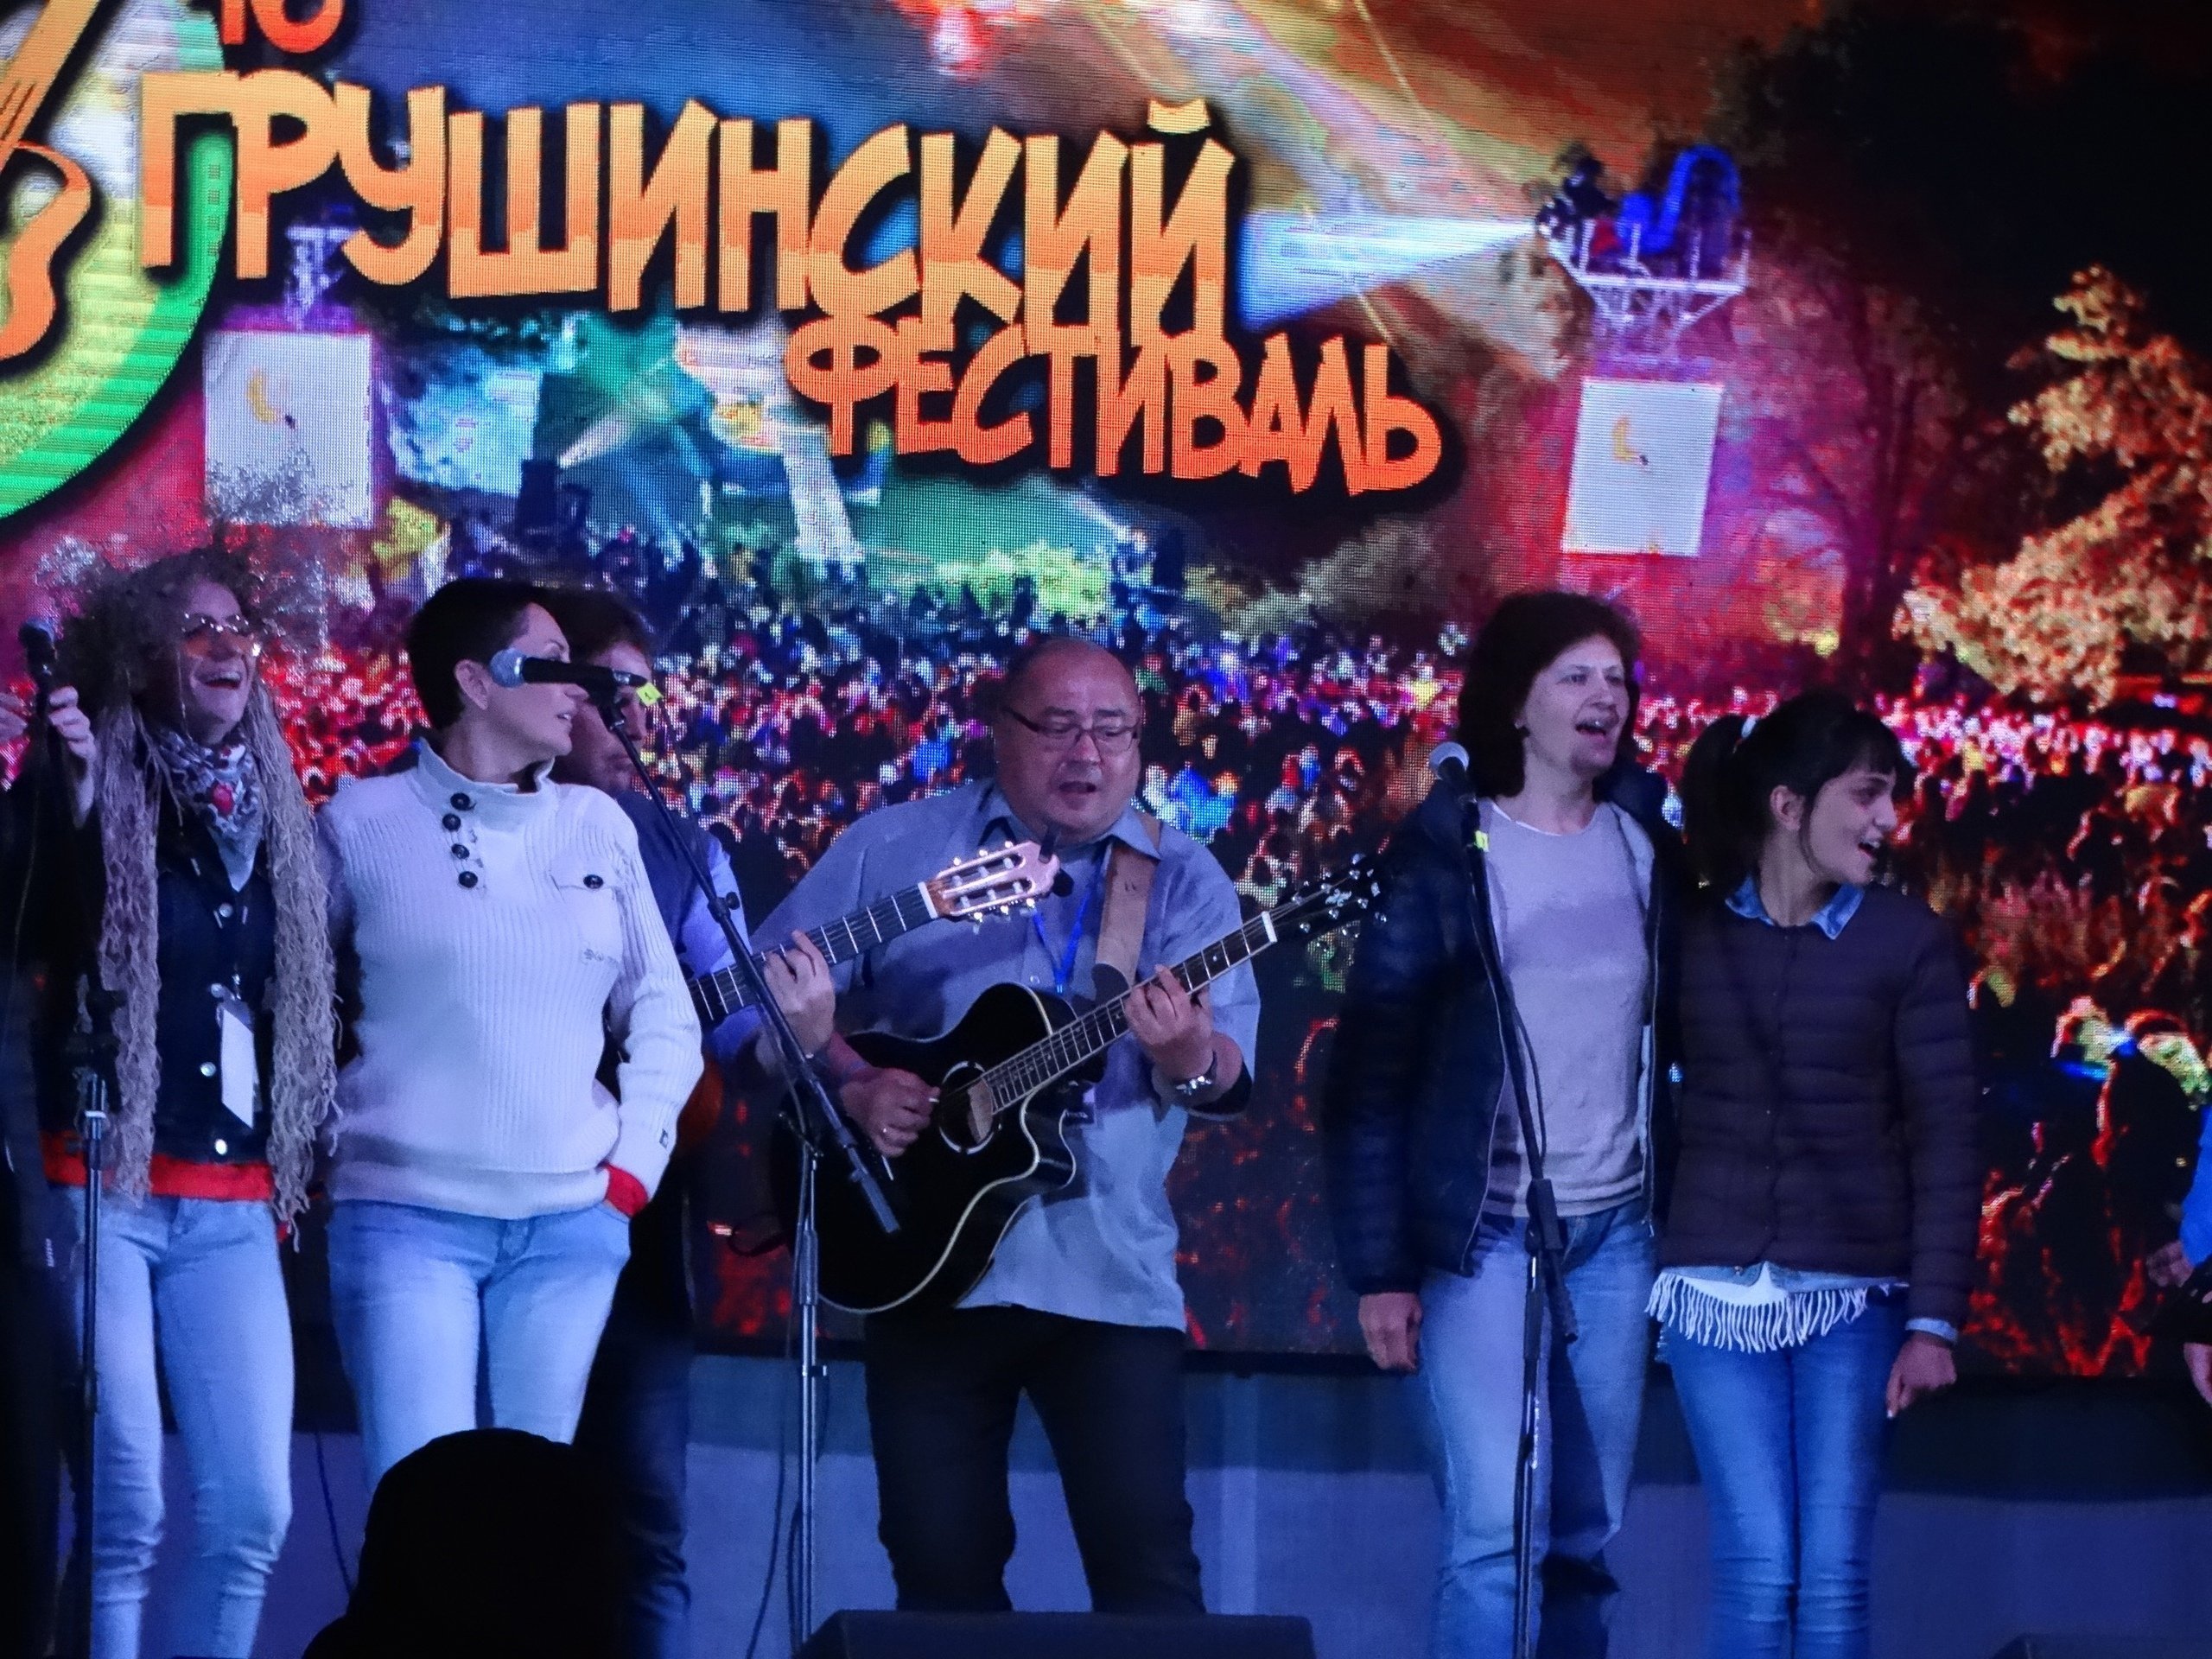 

Региональные власти запретили проводить Грушинский фестиваль и «Дикую мяту» 

